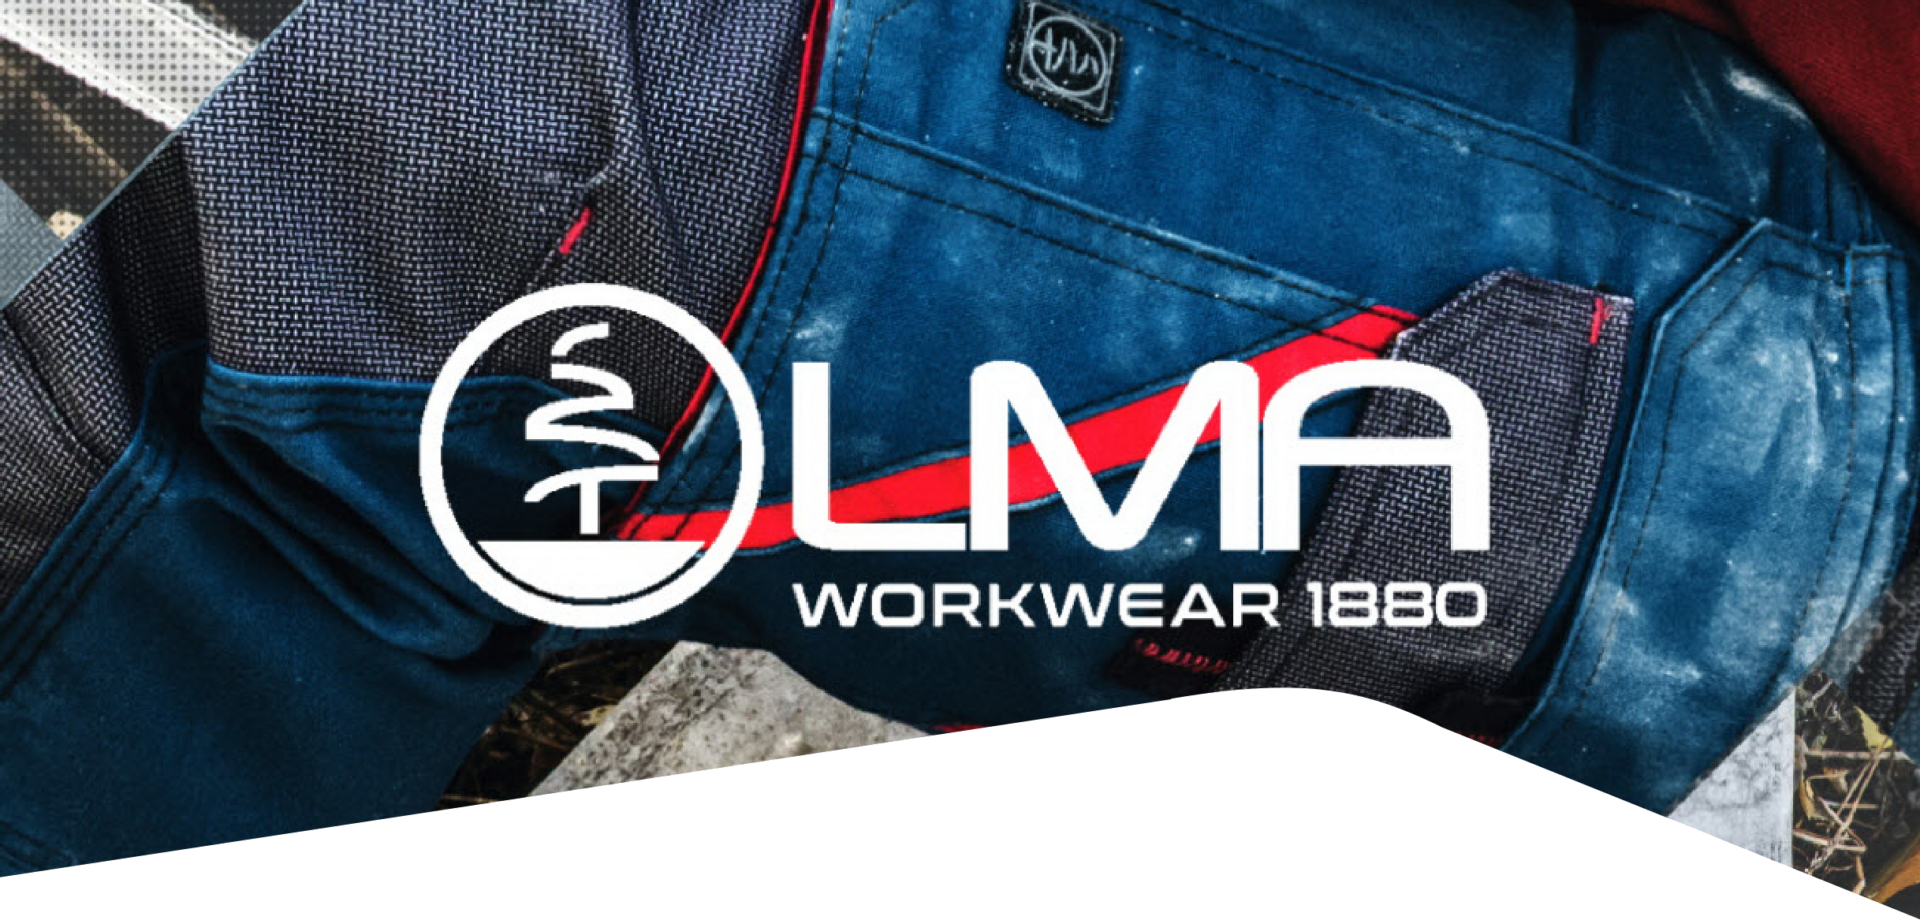 ducotex banner lma workwear